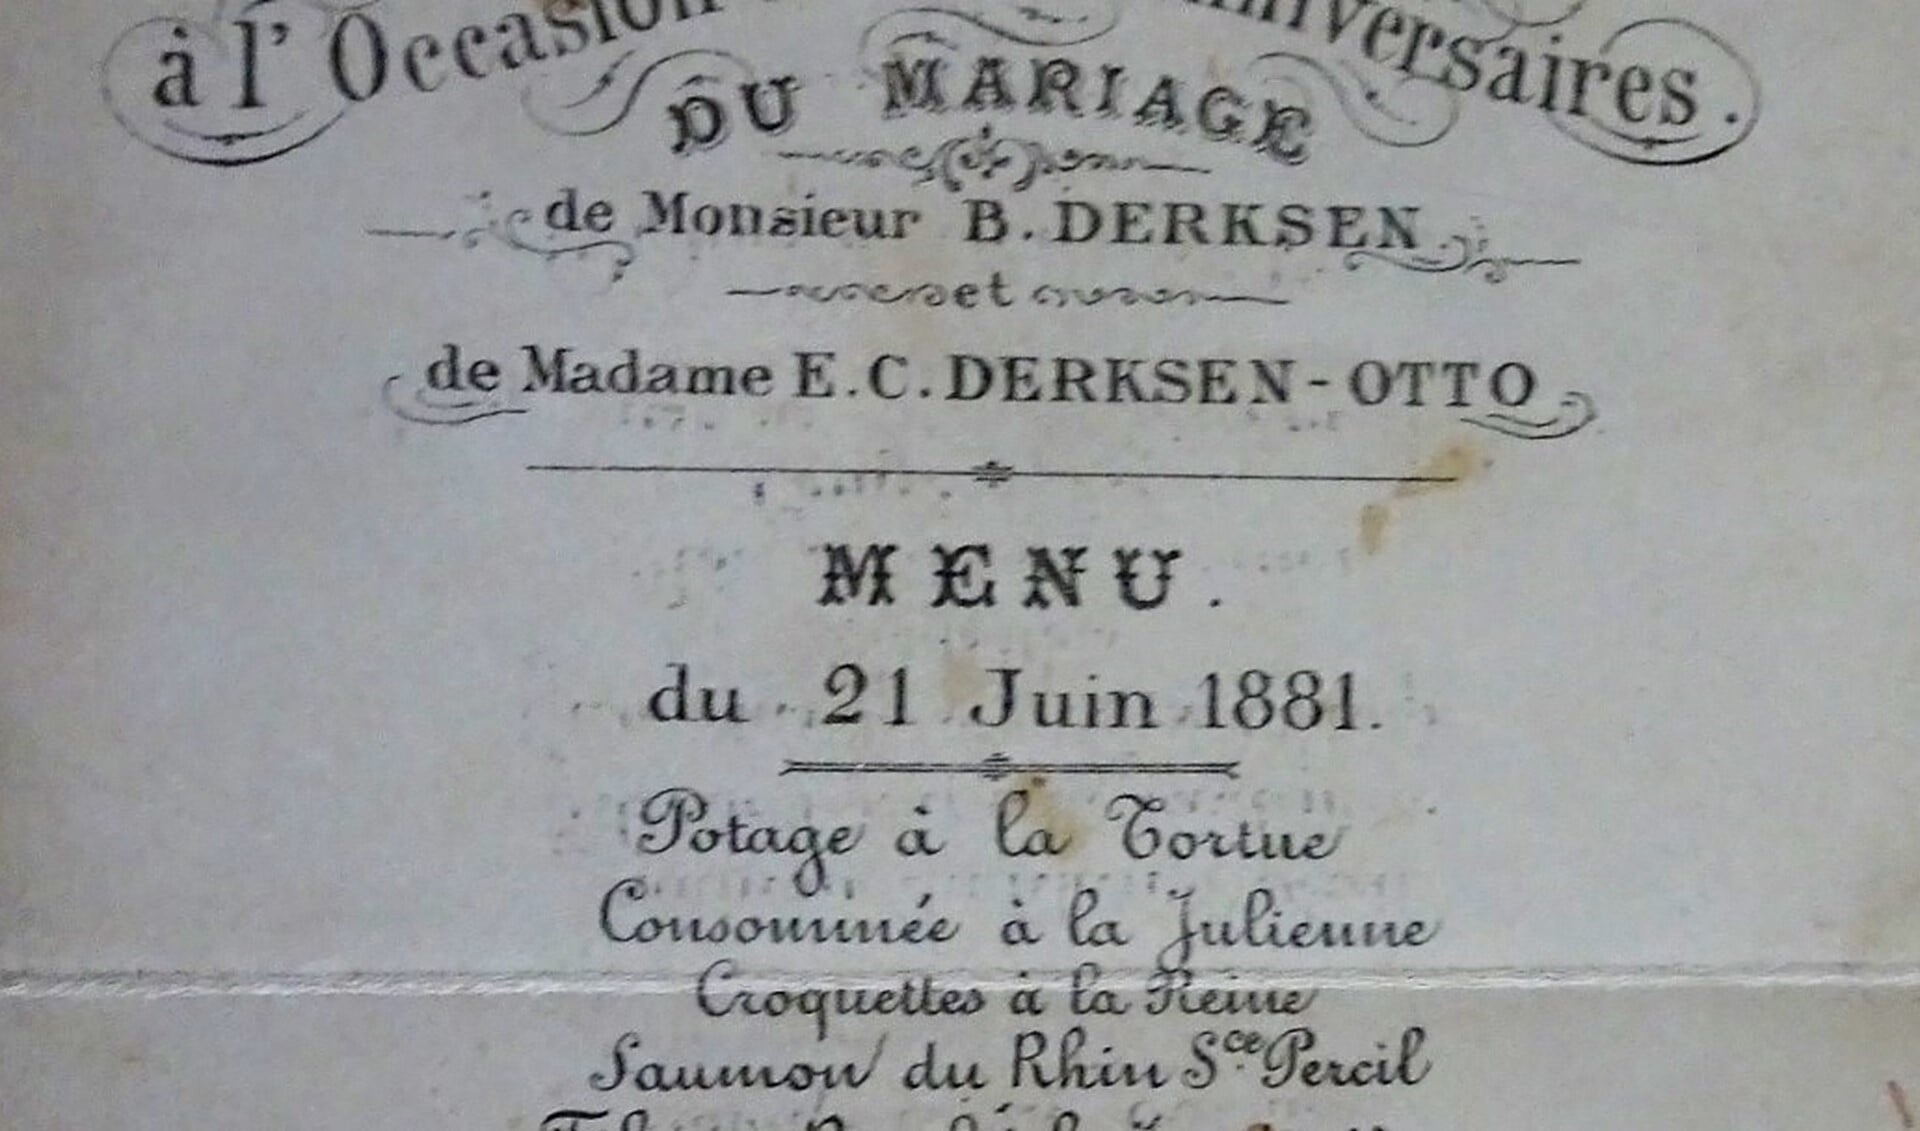 Het menu van de 25-jarige bruiloft van het echtpaar Derksen en Otto op 21 juni 1881.